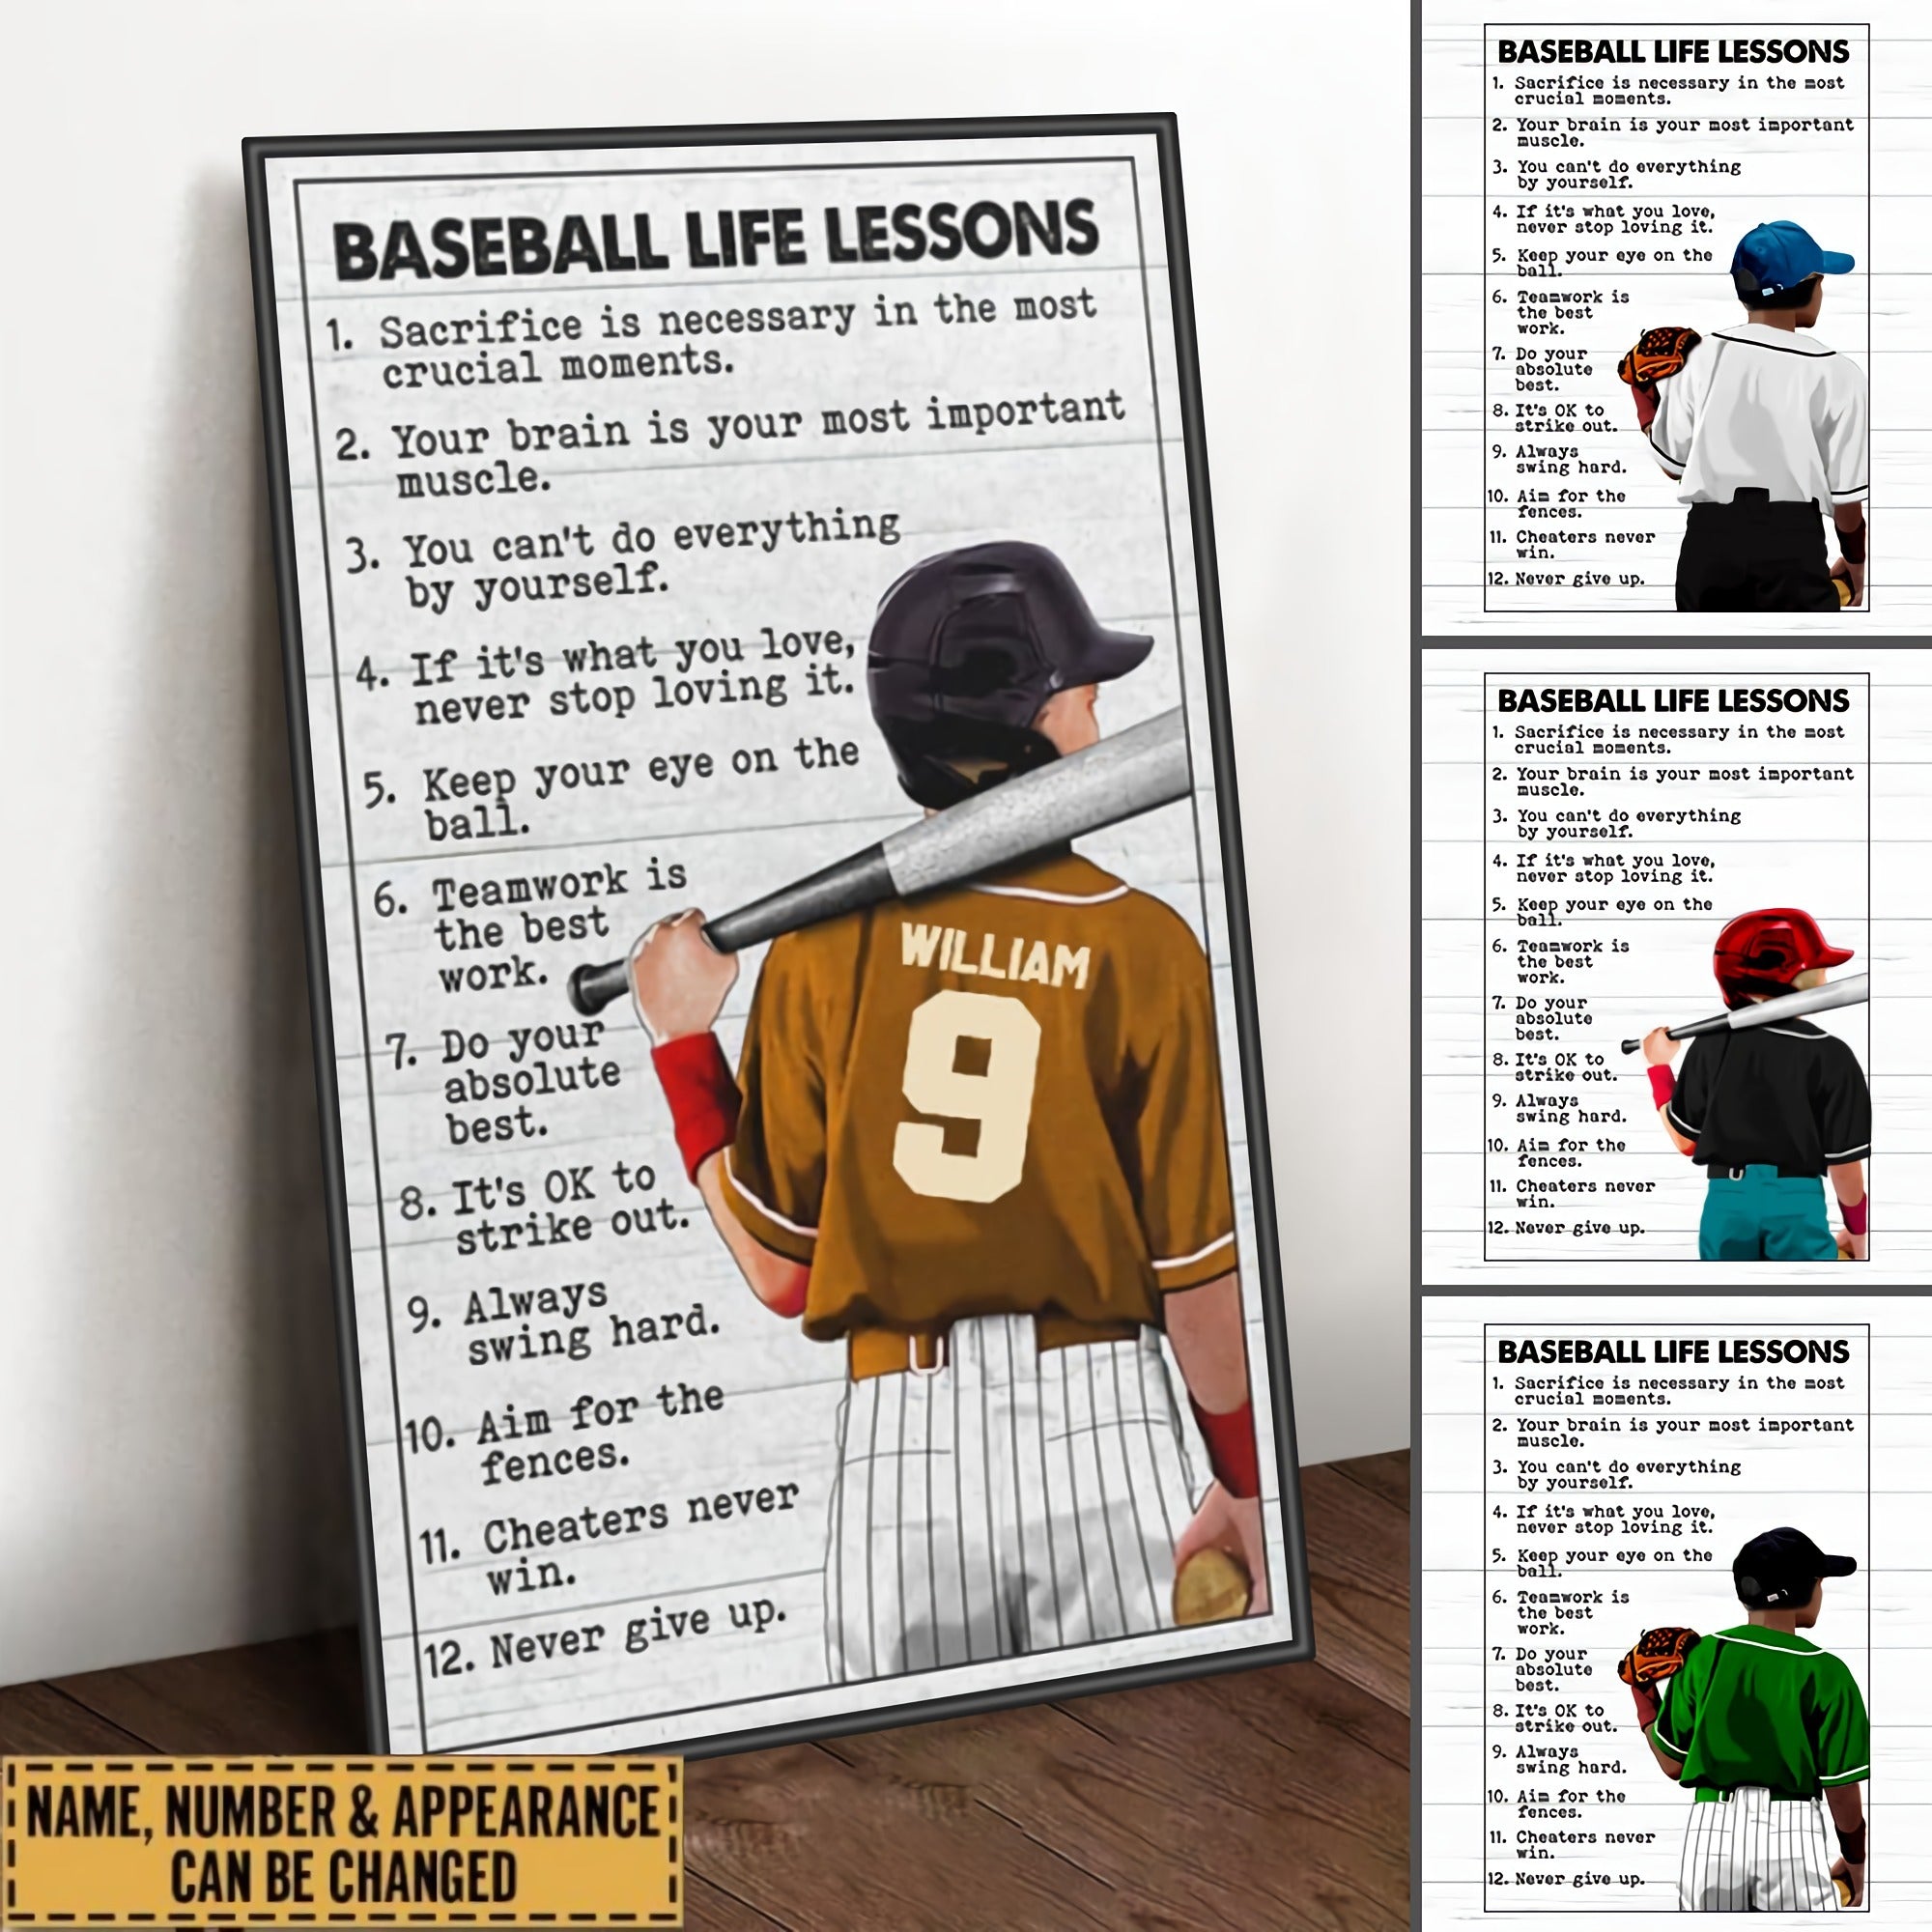 Custom Personalized Baseball Life Lessons Poster - gift for grandson, gift for son